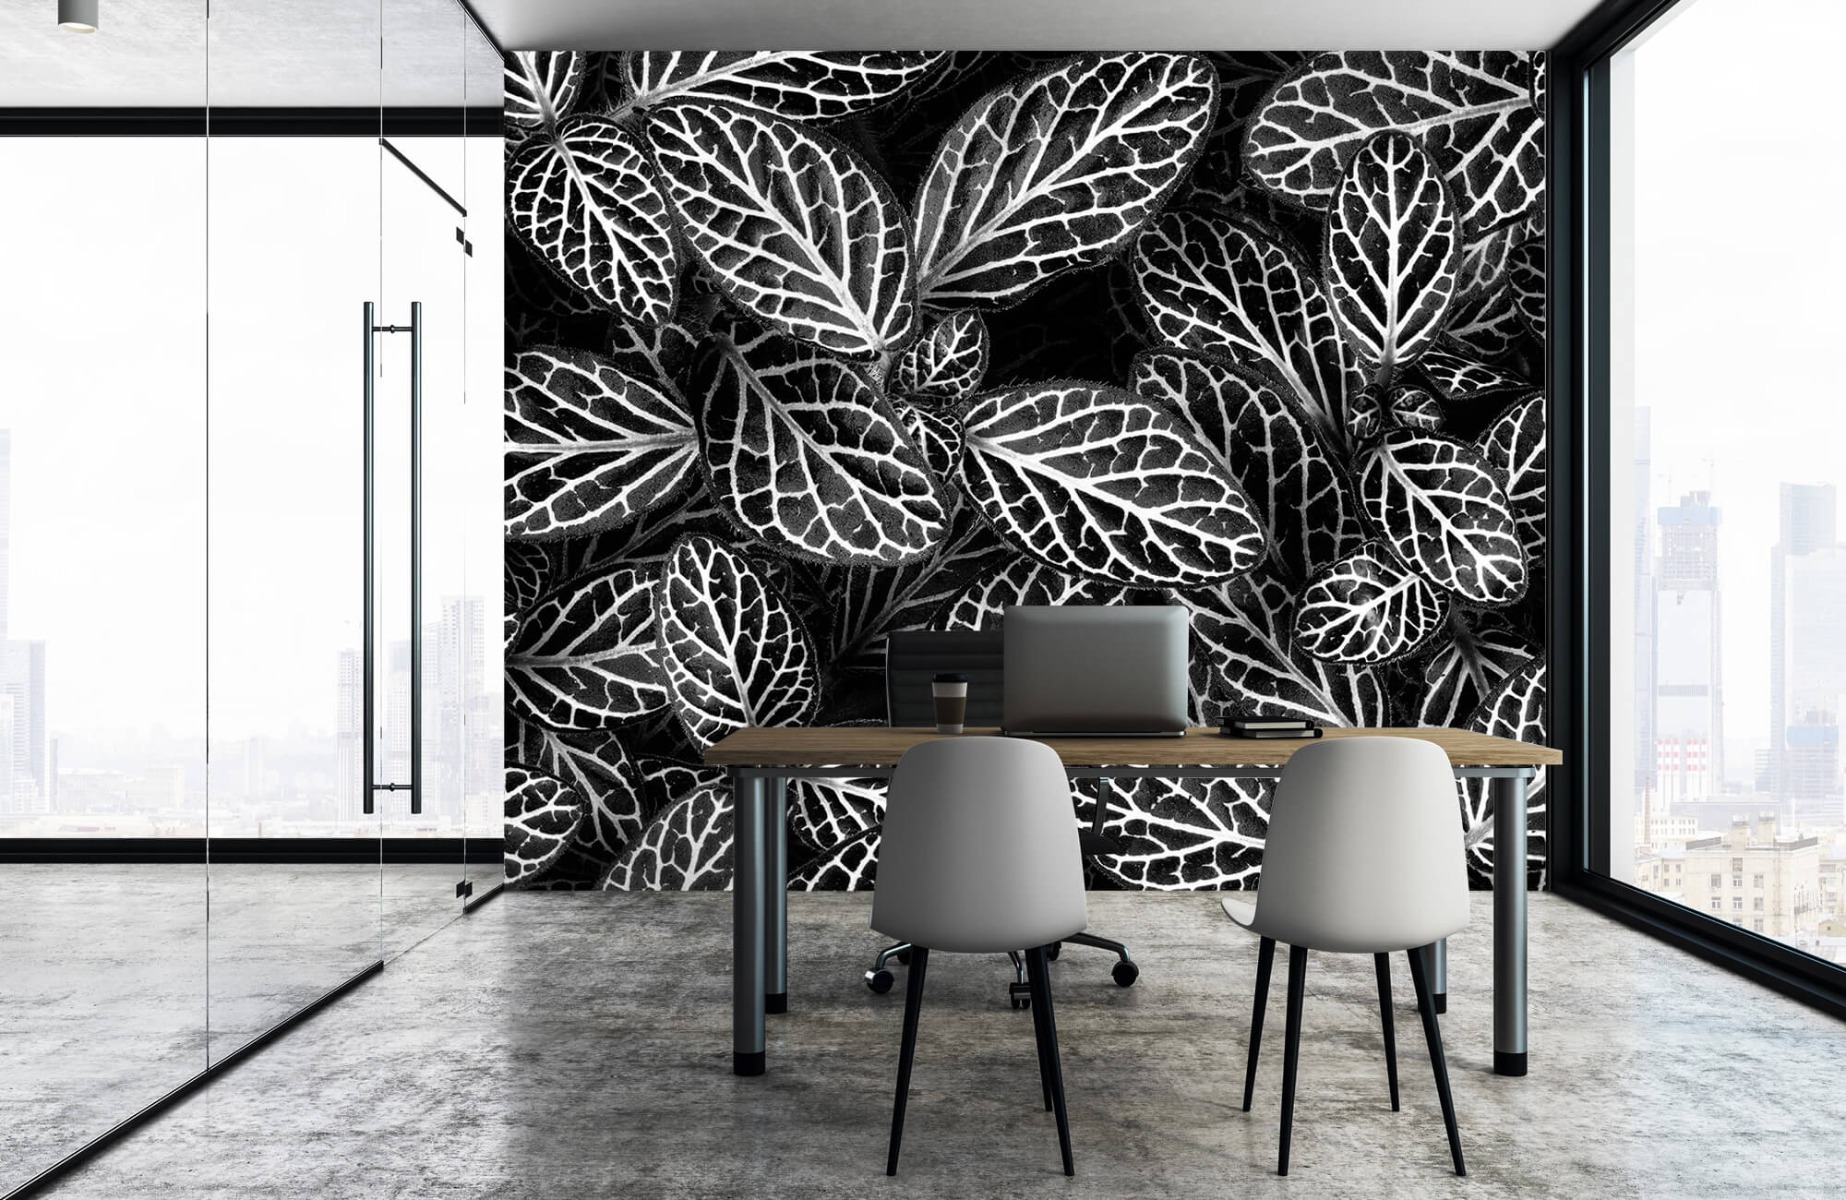 Blanco y negro - Papel pintado con Fittonia - Sala de reuniones 15